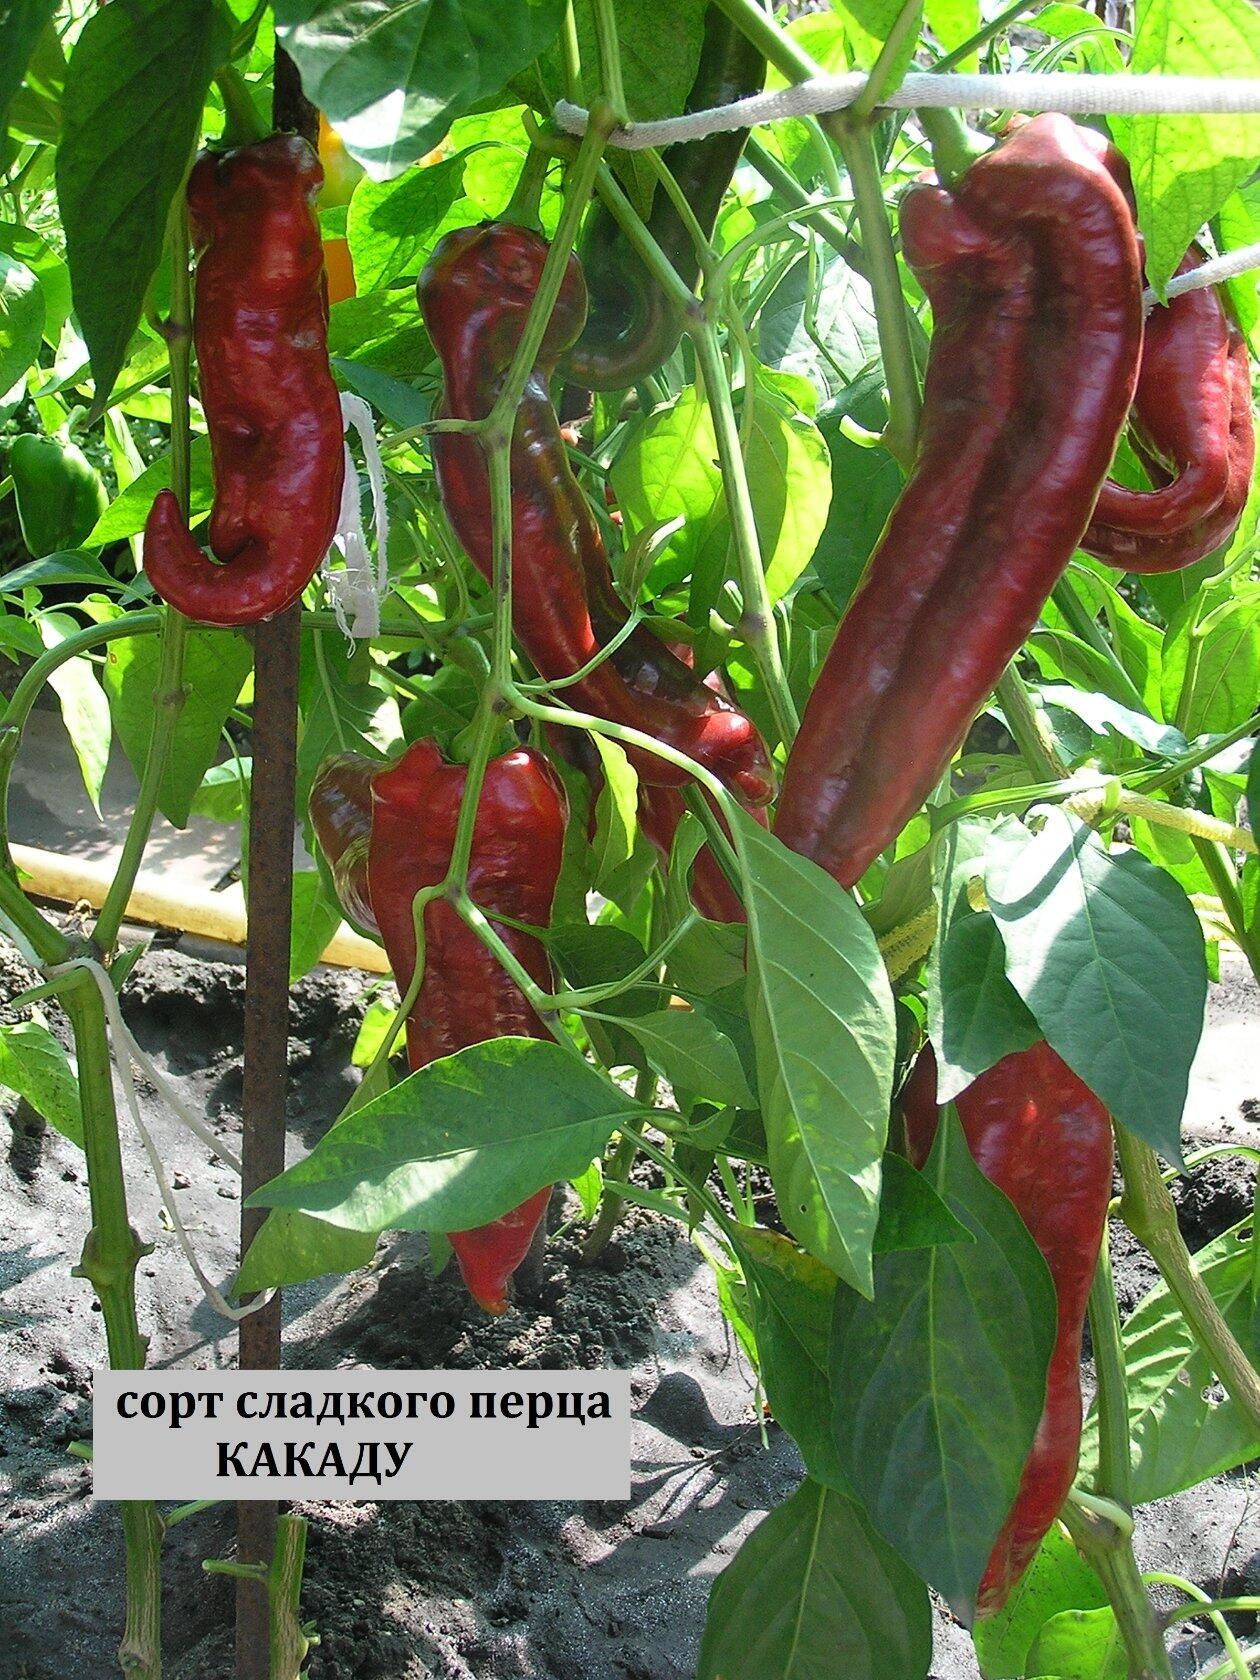 Перец какаду - характеристика и описание сорта, гибрида, фото, урожайность, отзывы овощеводов